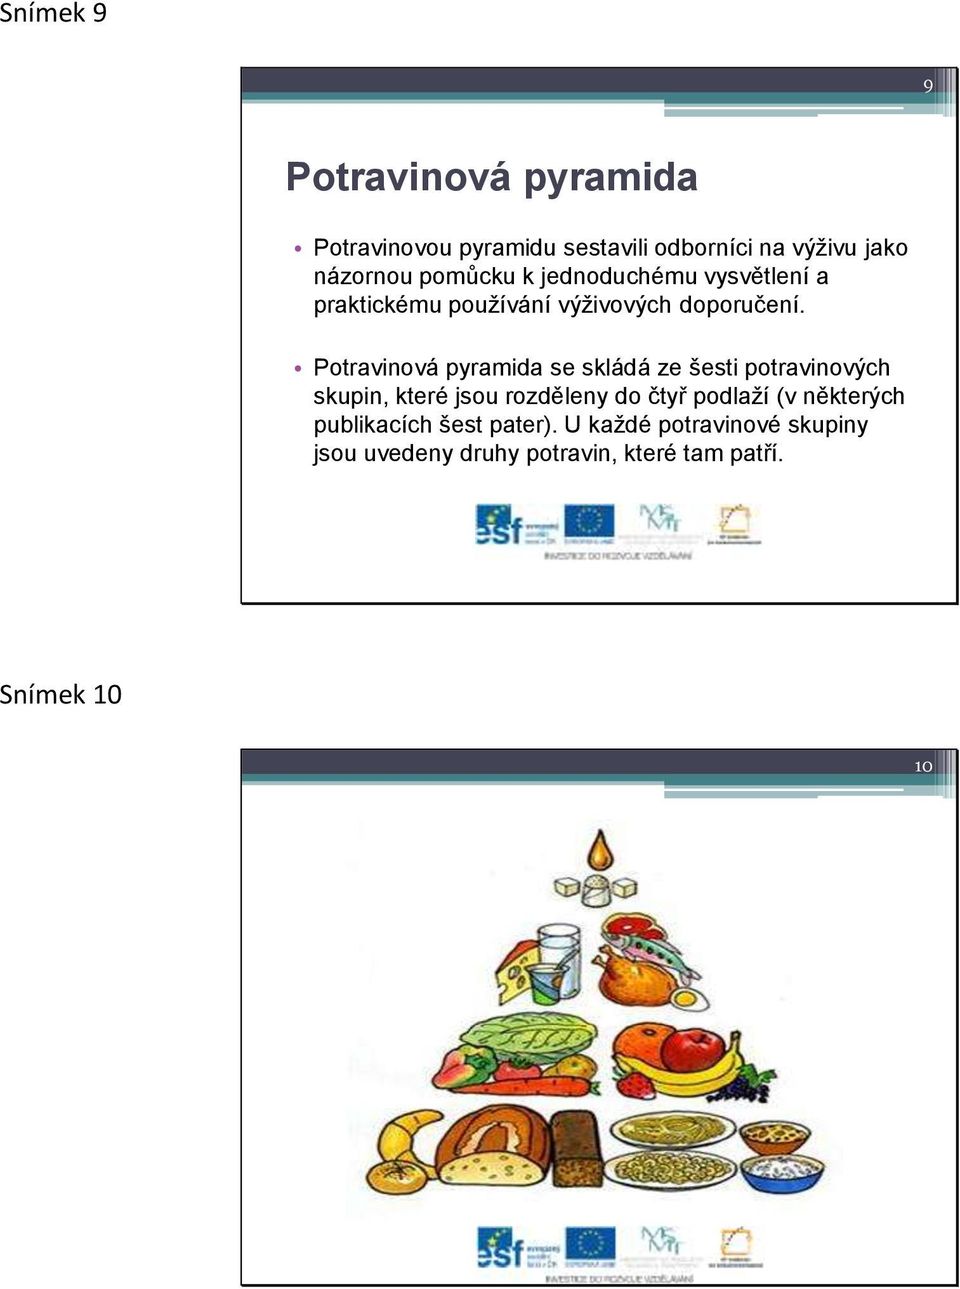 Potravinová pyramida se skládá ze šesti potravinových skupin, které jsou rozděleny do čtyř podlaží